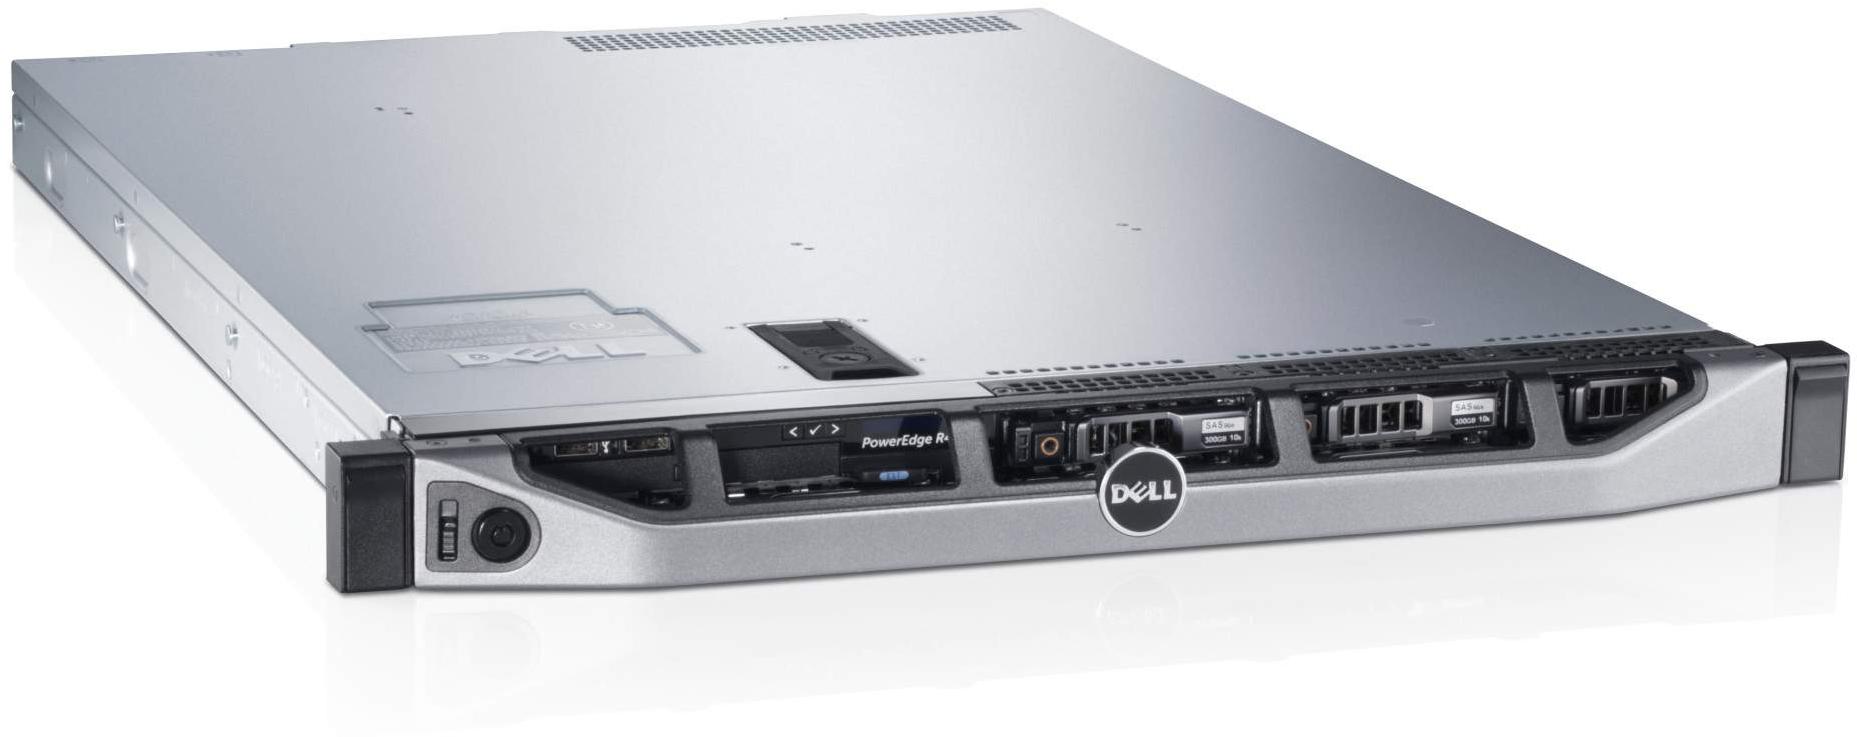    Dell PowerEdge R420 210-39988/17  #1